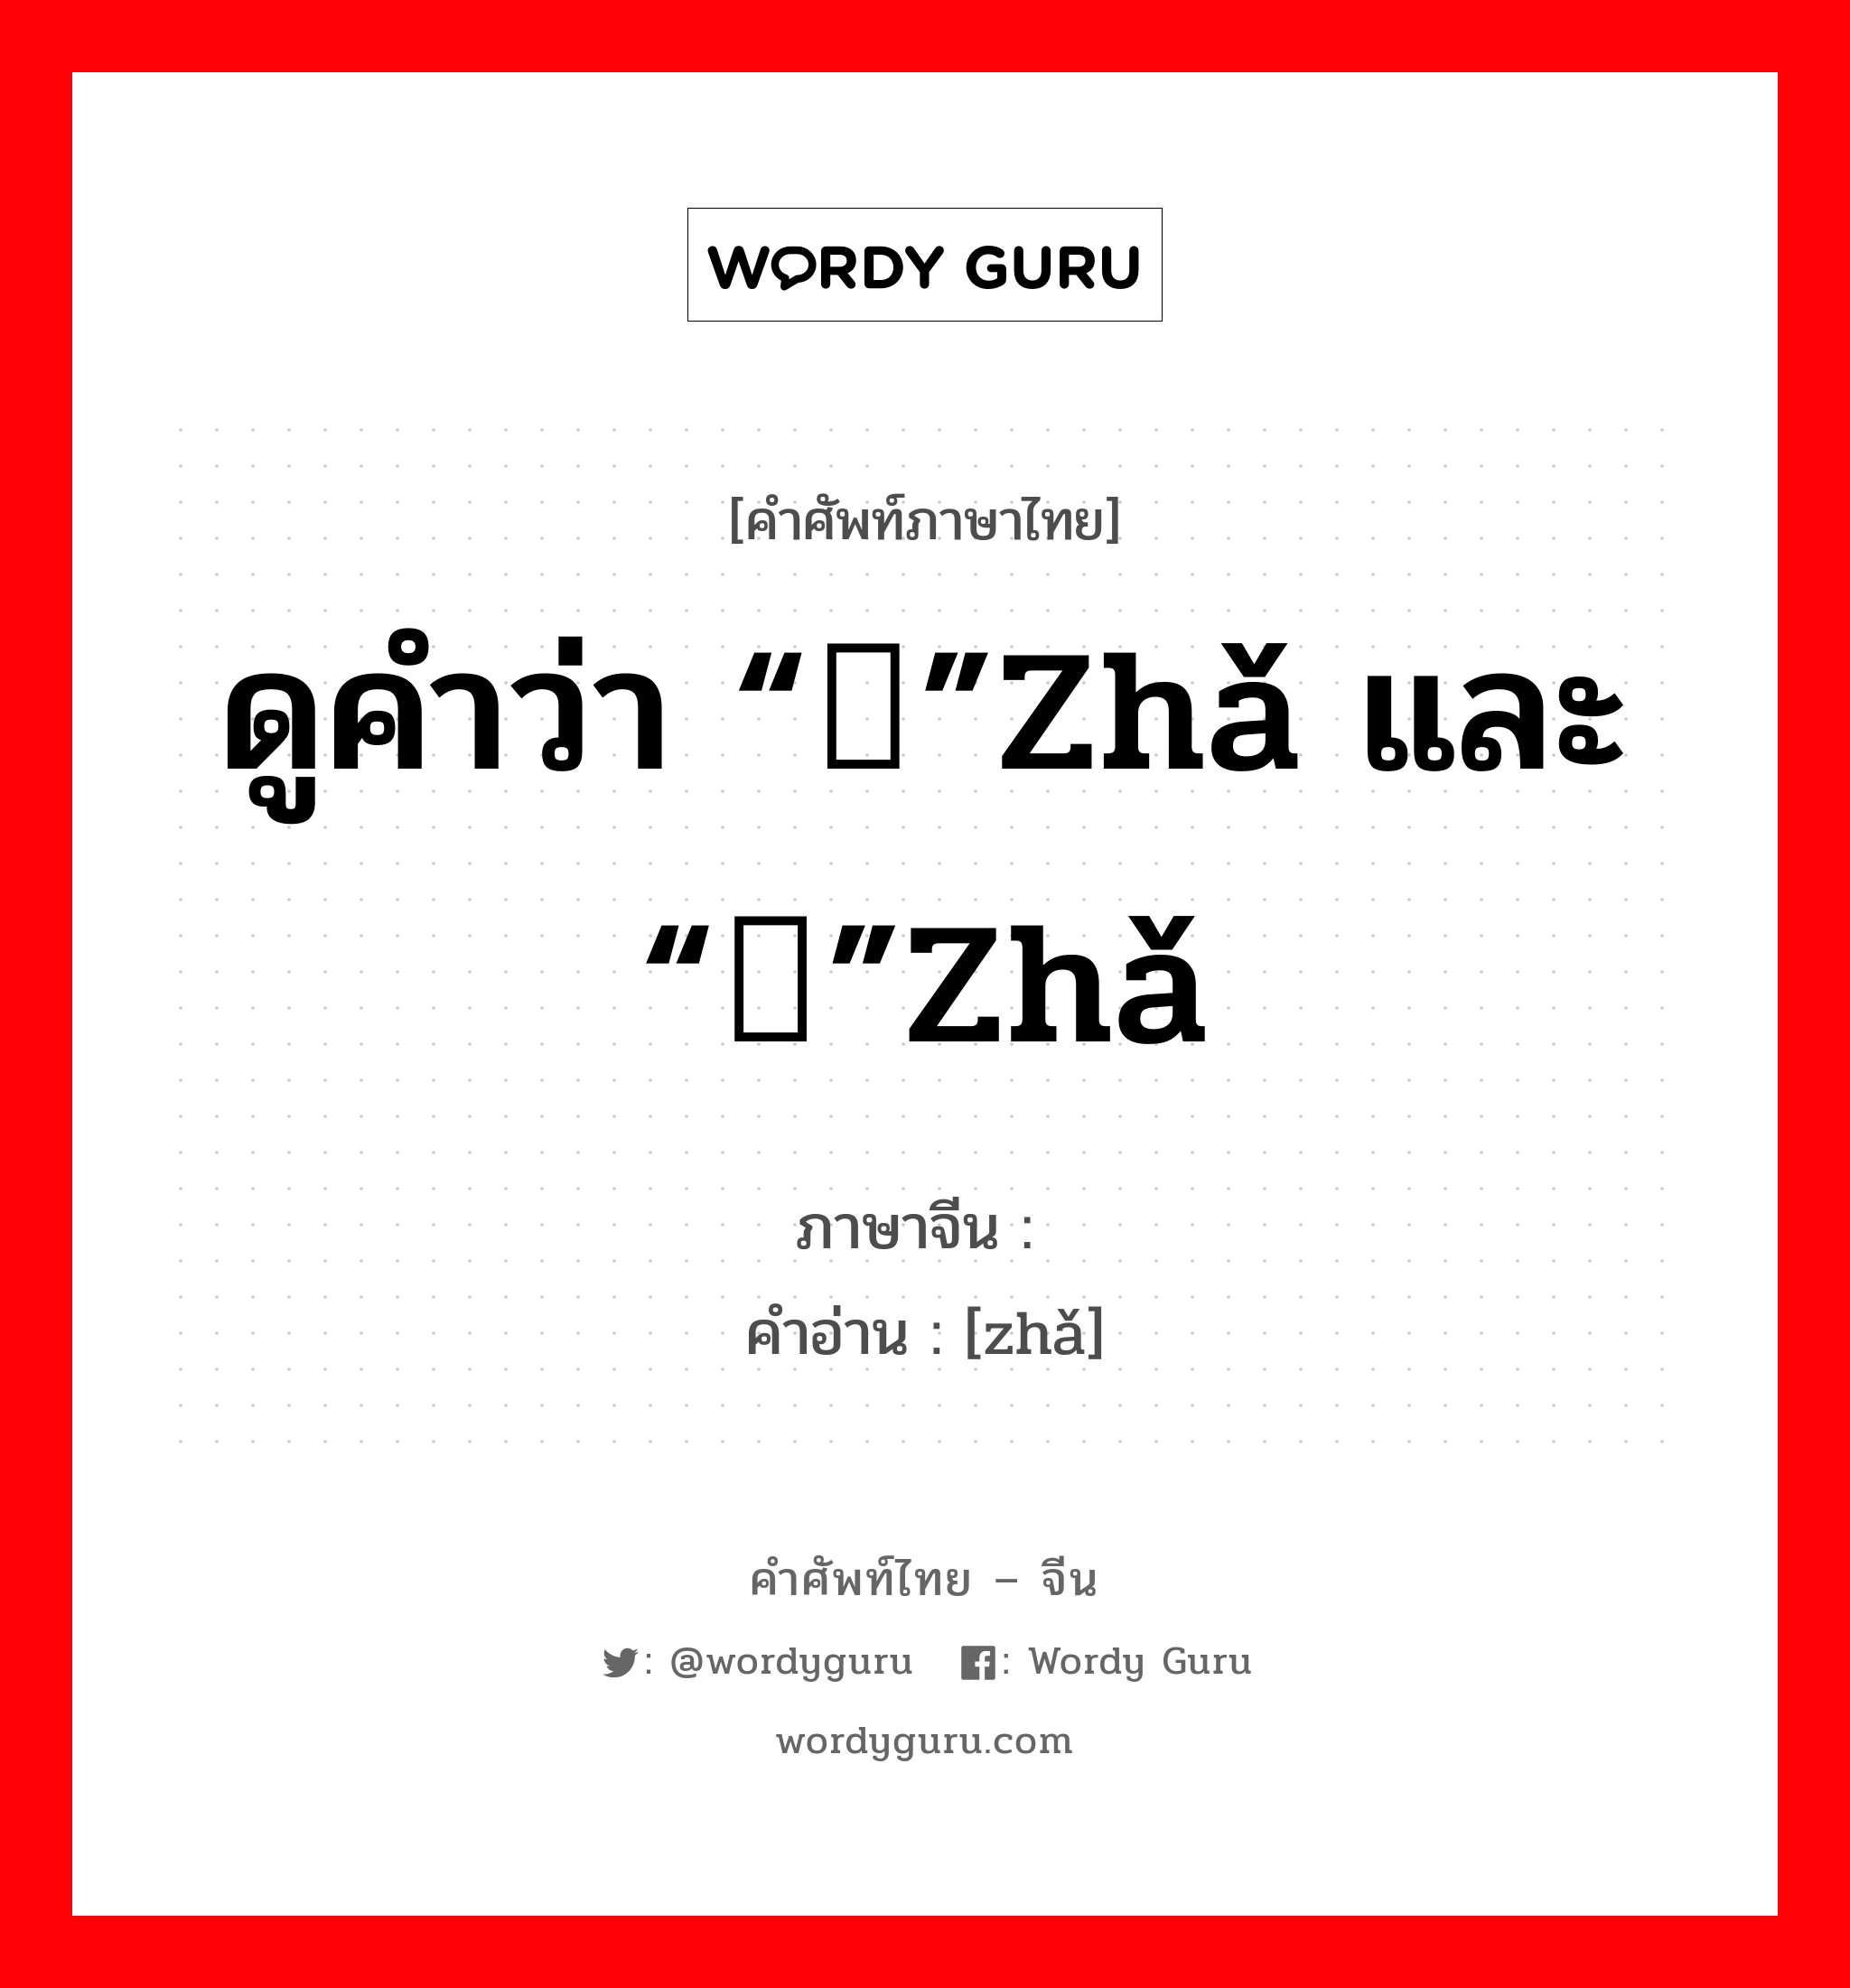 ดูคำว่า “鲊”zhǎ และ “苲”zhǎ ภาษาจีนคืออะไร, คำศัพท์ภาษาไทย - จีน ดูคำว่า “鲊”zhǎ และ “苲”zhǎ ภาษาจีน 鲝 คำอ่าน [zhǎ]